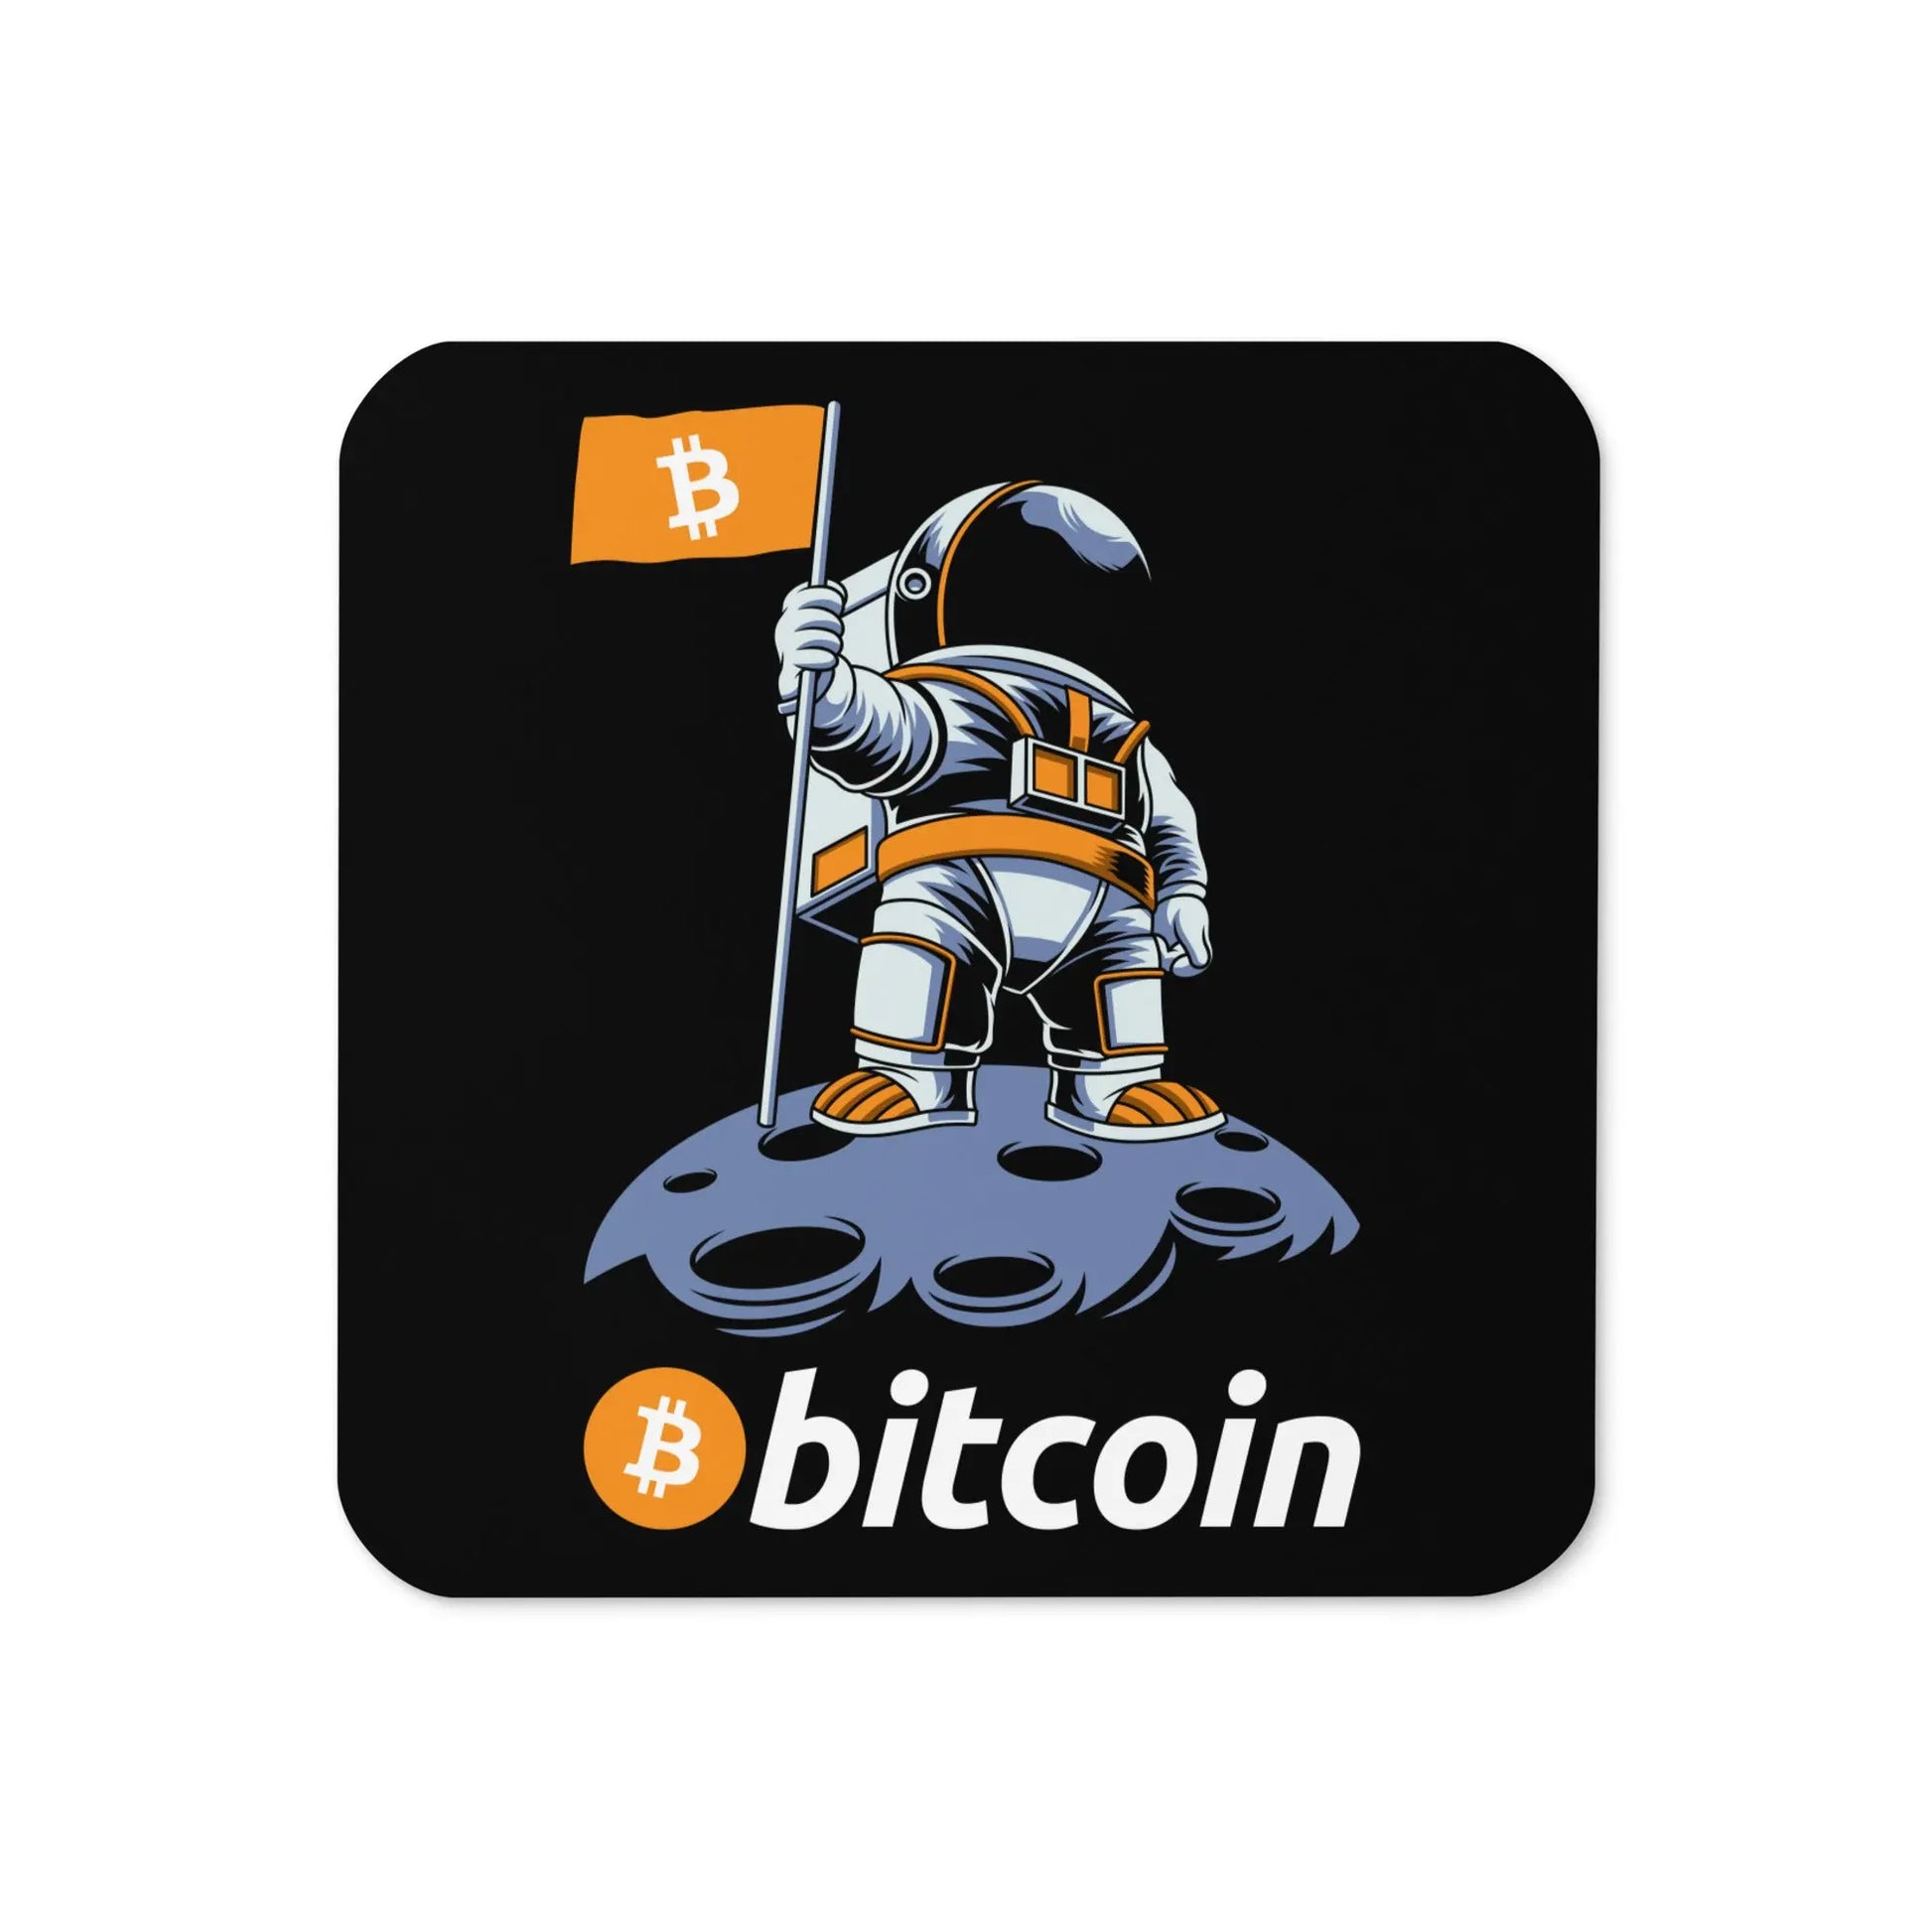 Bitcoin To The Moon - Cork-back Bitcoin Coaster